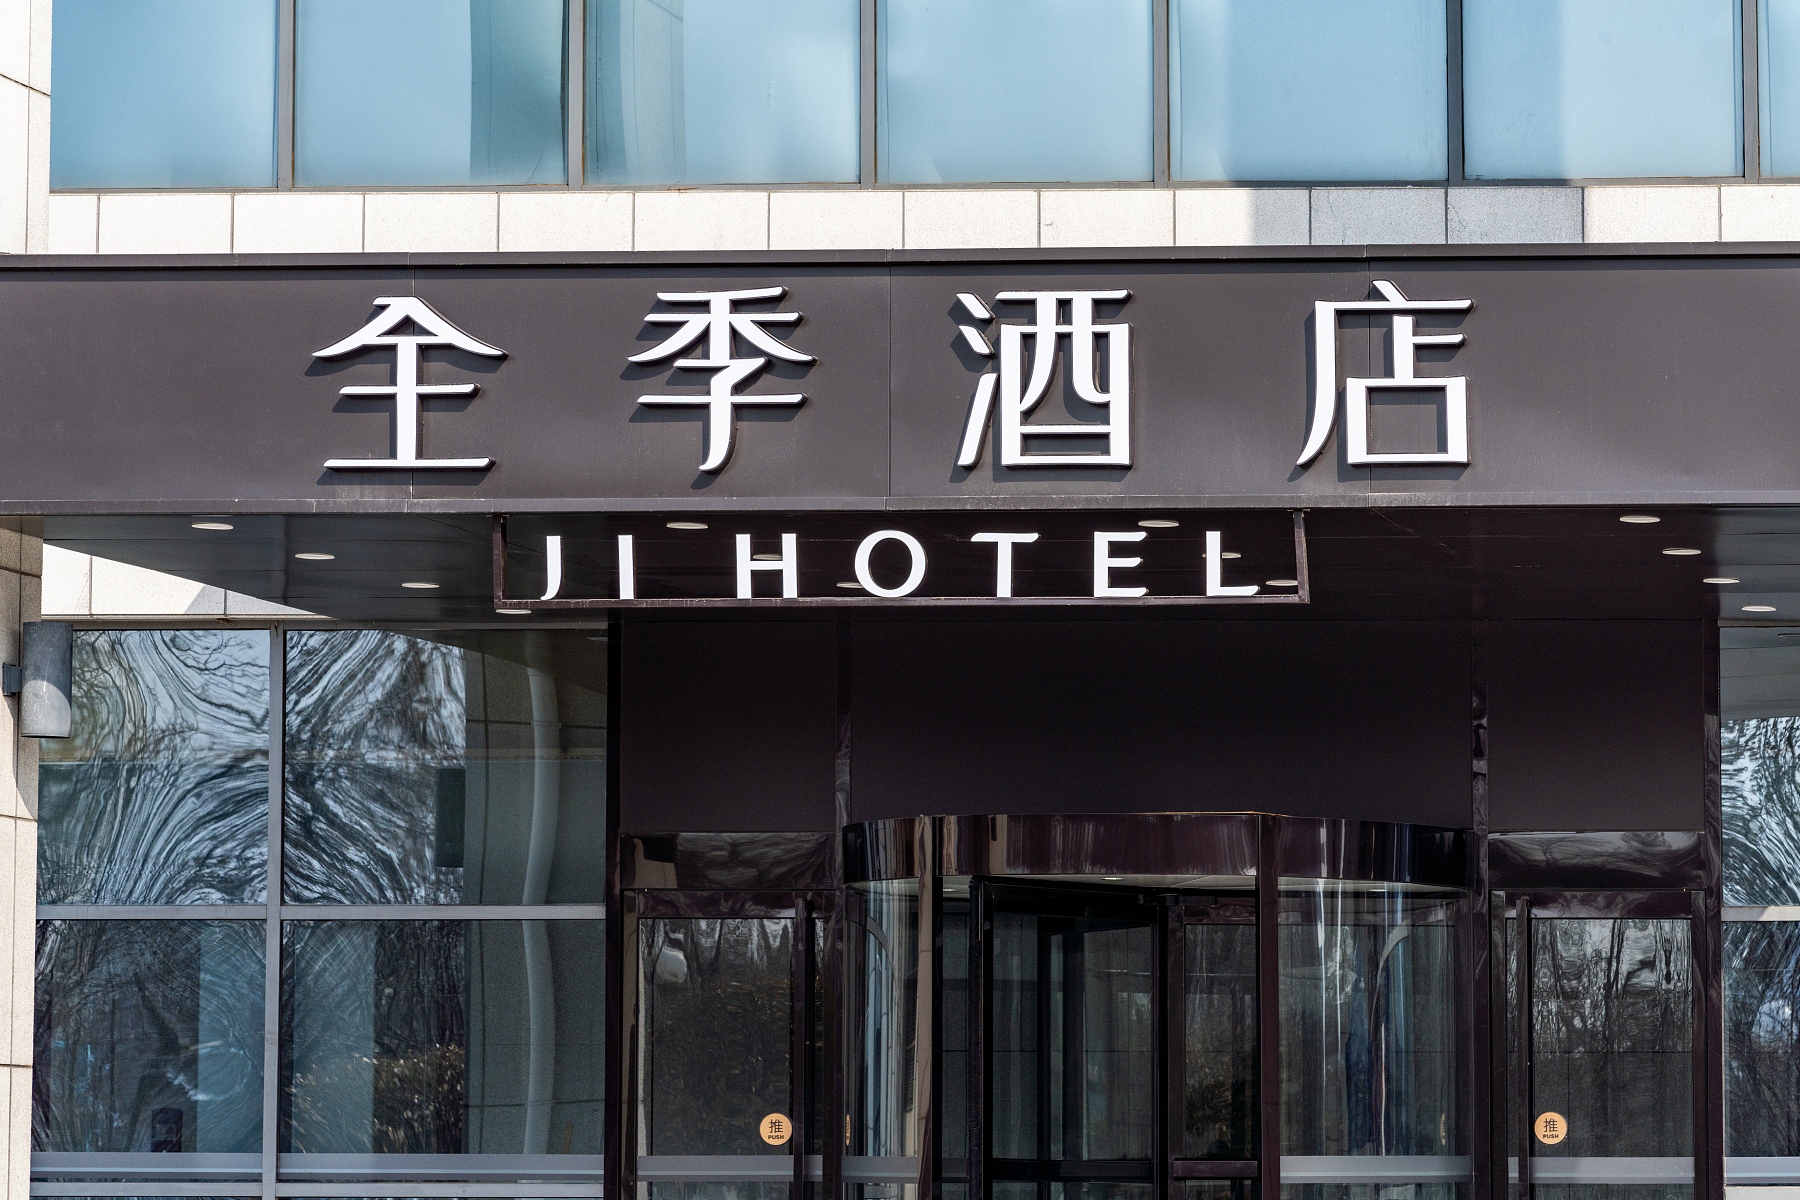 全季酒店(天津西站店)酒店位于天津火车西站附近,距天津火车西站南